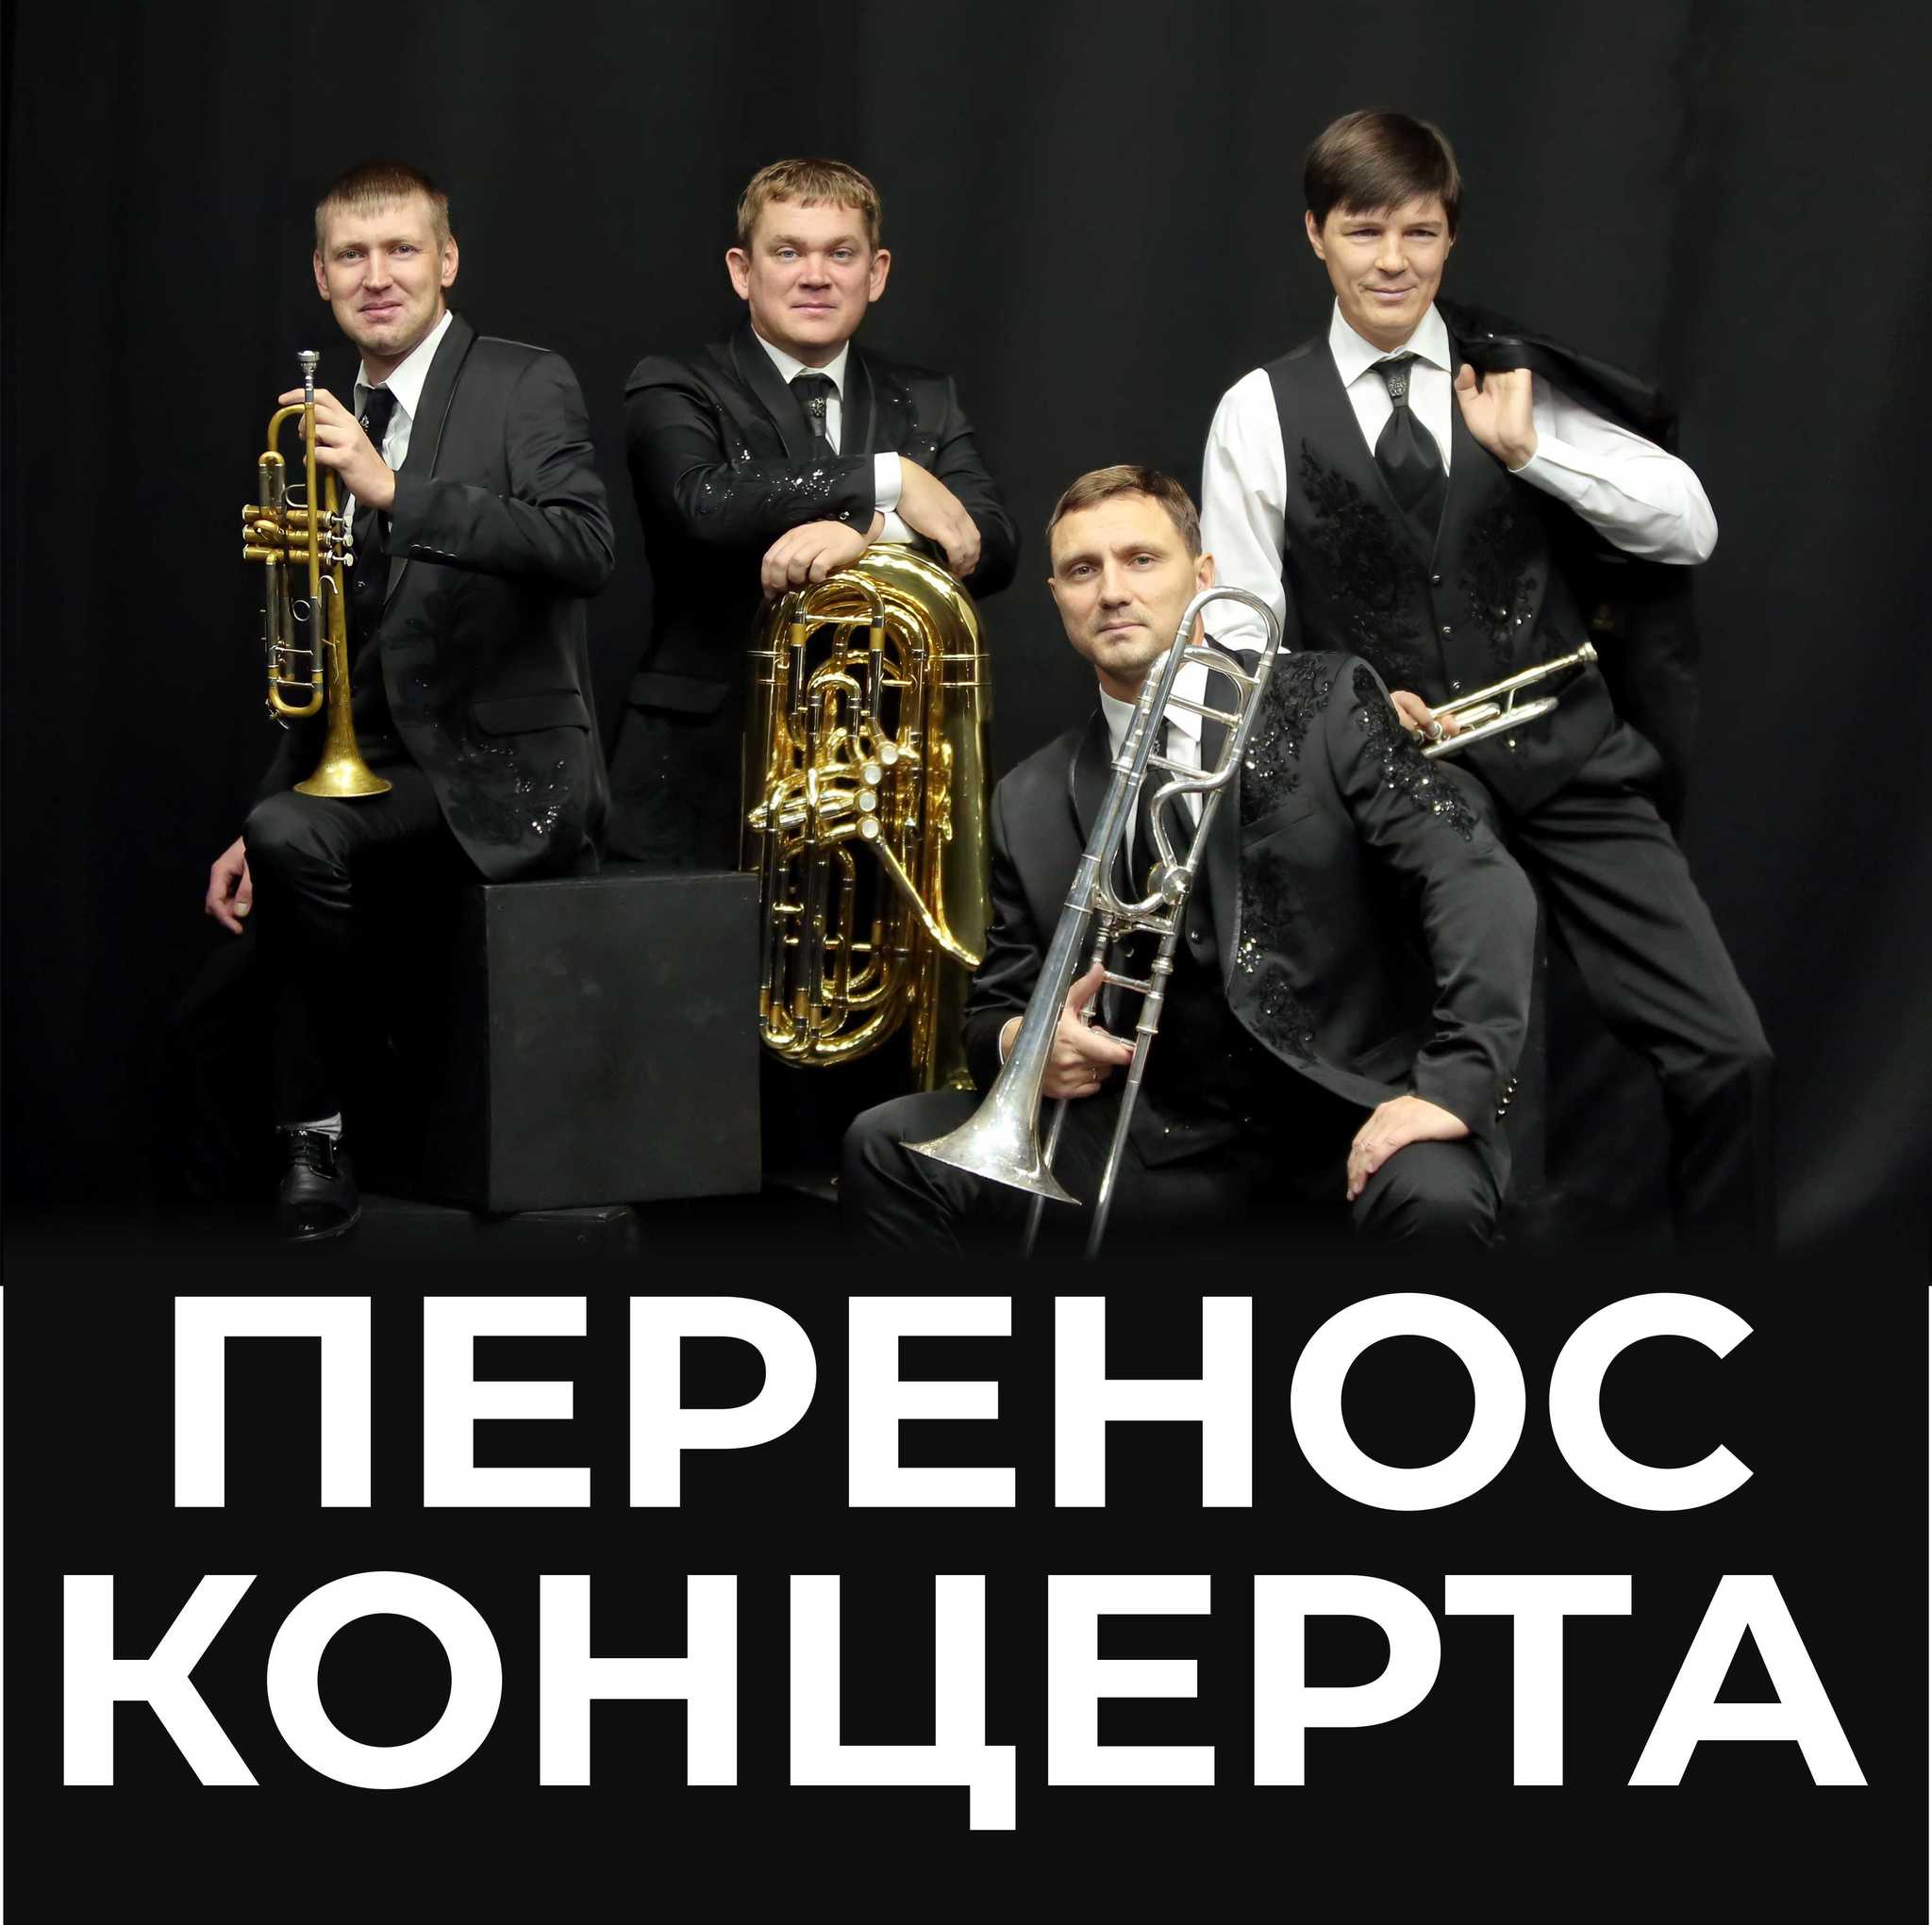 Концерт камерного оркестра "Сибирь-Брасс" "Музыкальный MIX", запланированный на 15 апреля - перенесён.